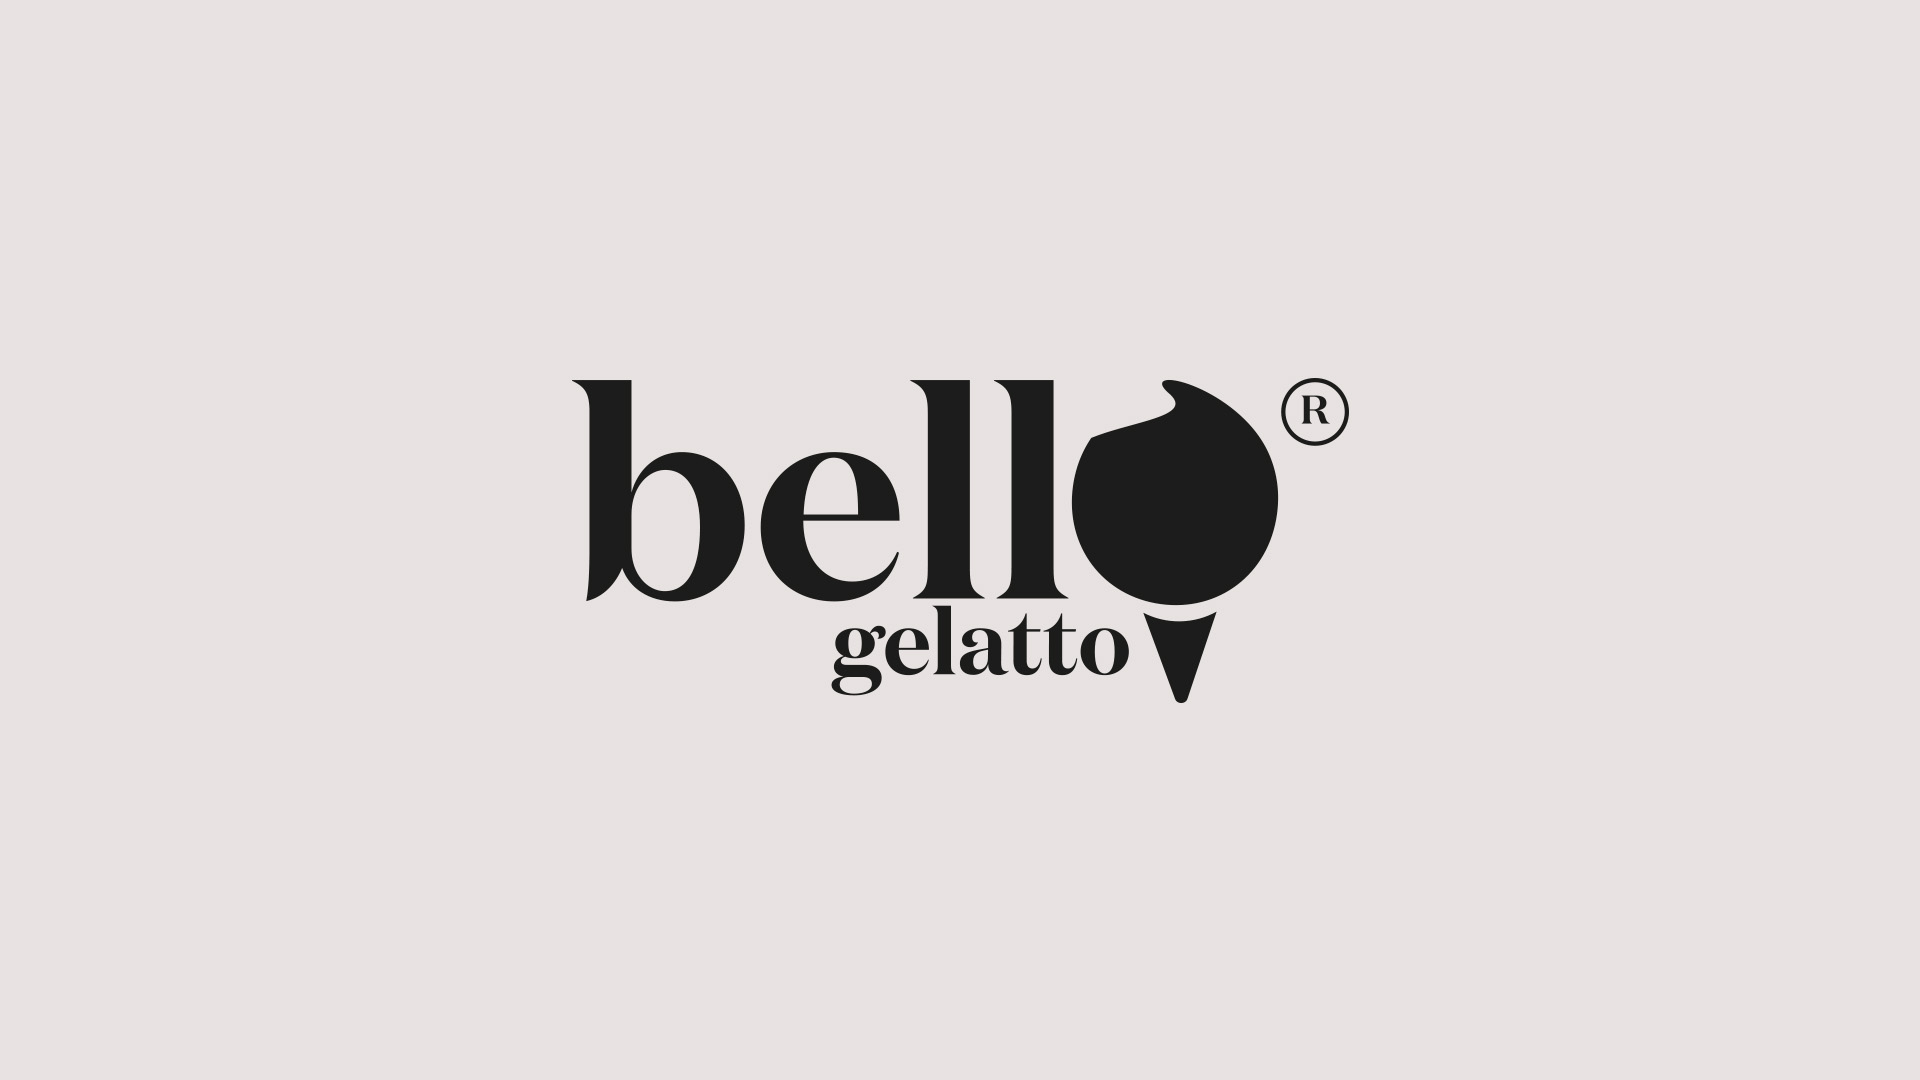 Sandro Brito de Castro Designing Indulgence foe Bello Gelatto’s through a Visual Identity